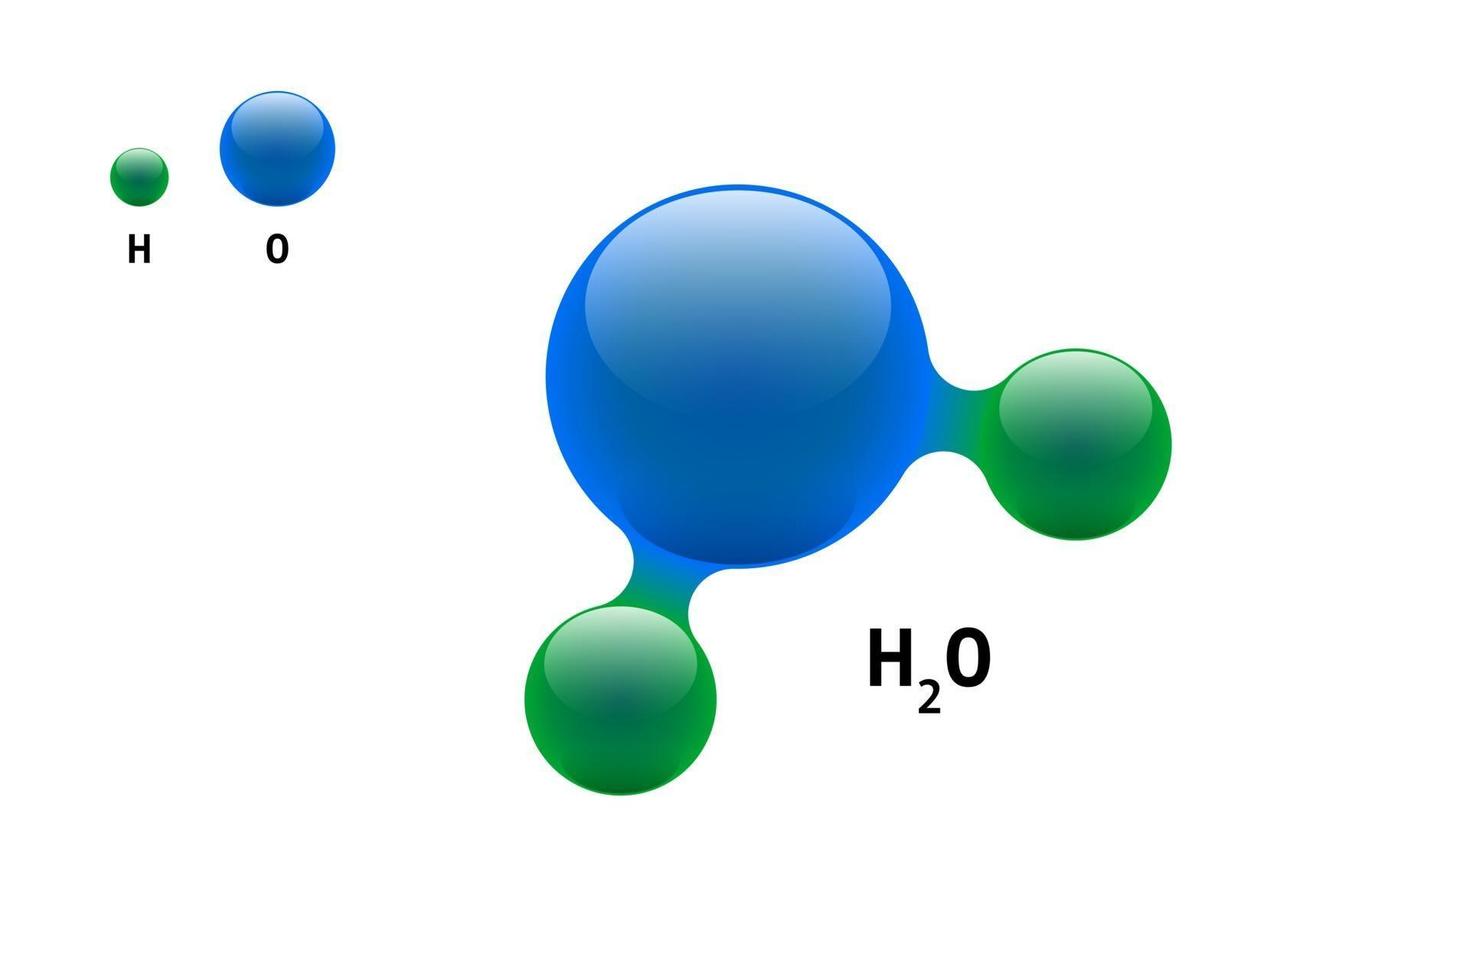 modelo de química molécula agua h2o fórmula de elemento científico.  Partículas integradas inorgánicas naturales constituidas por